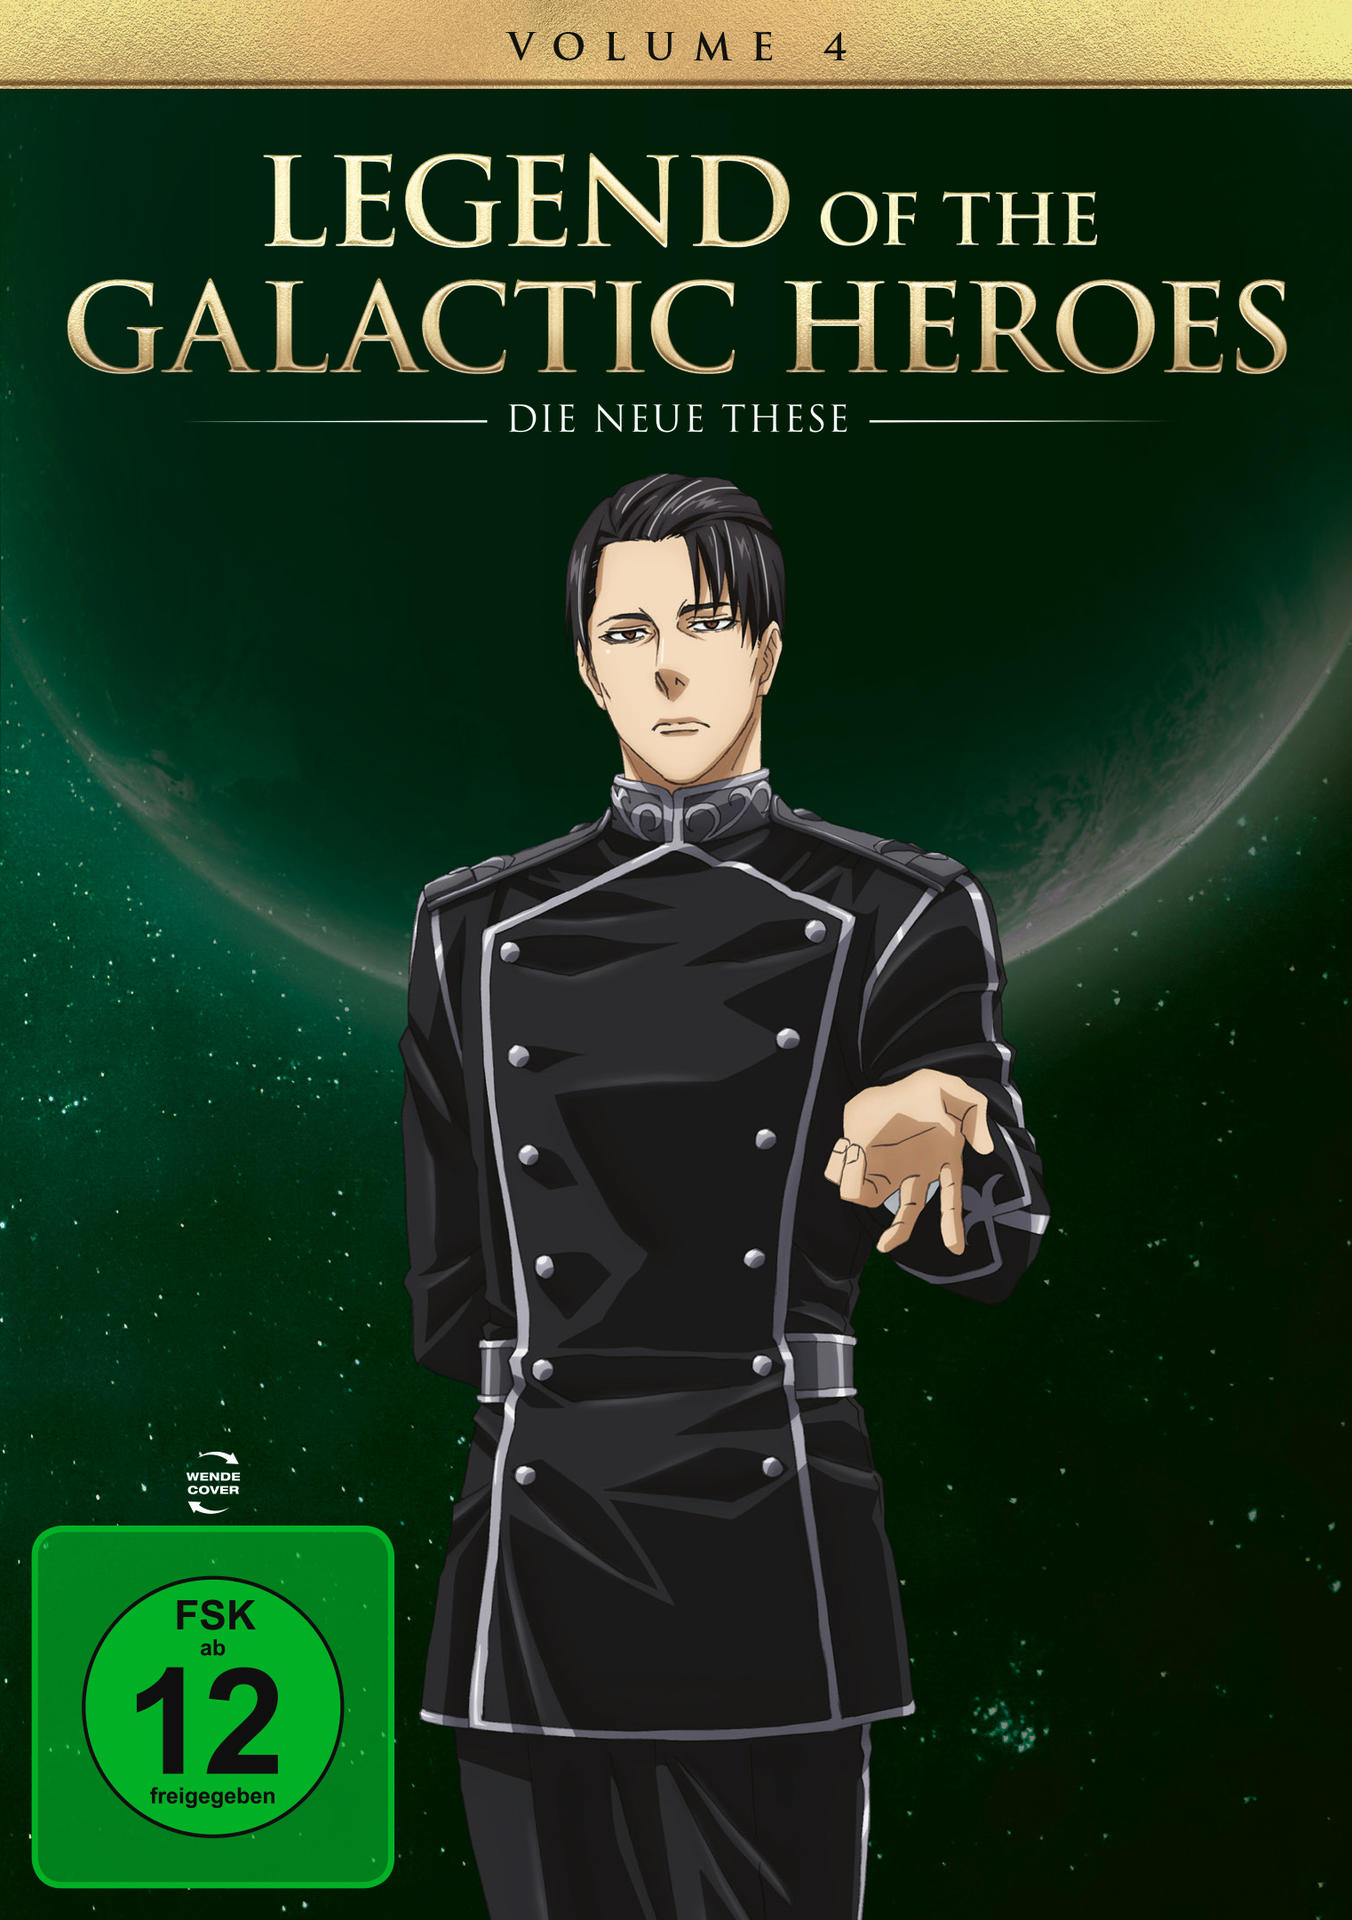 the These 4 of Galactic Vol. Neue DVD Heroes: Legend Die